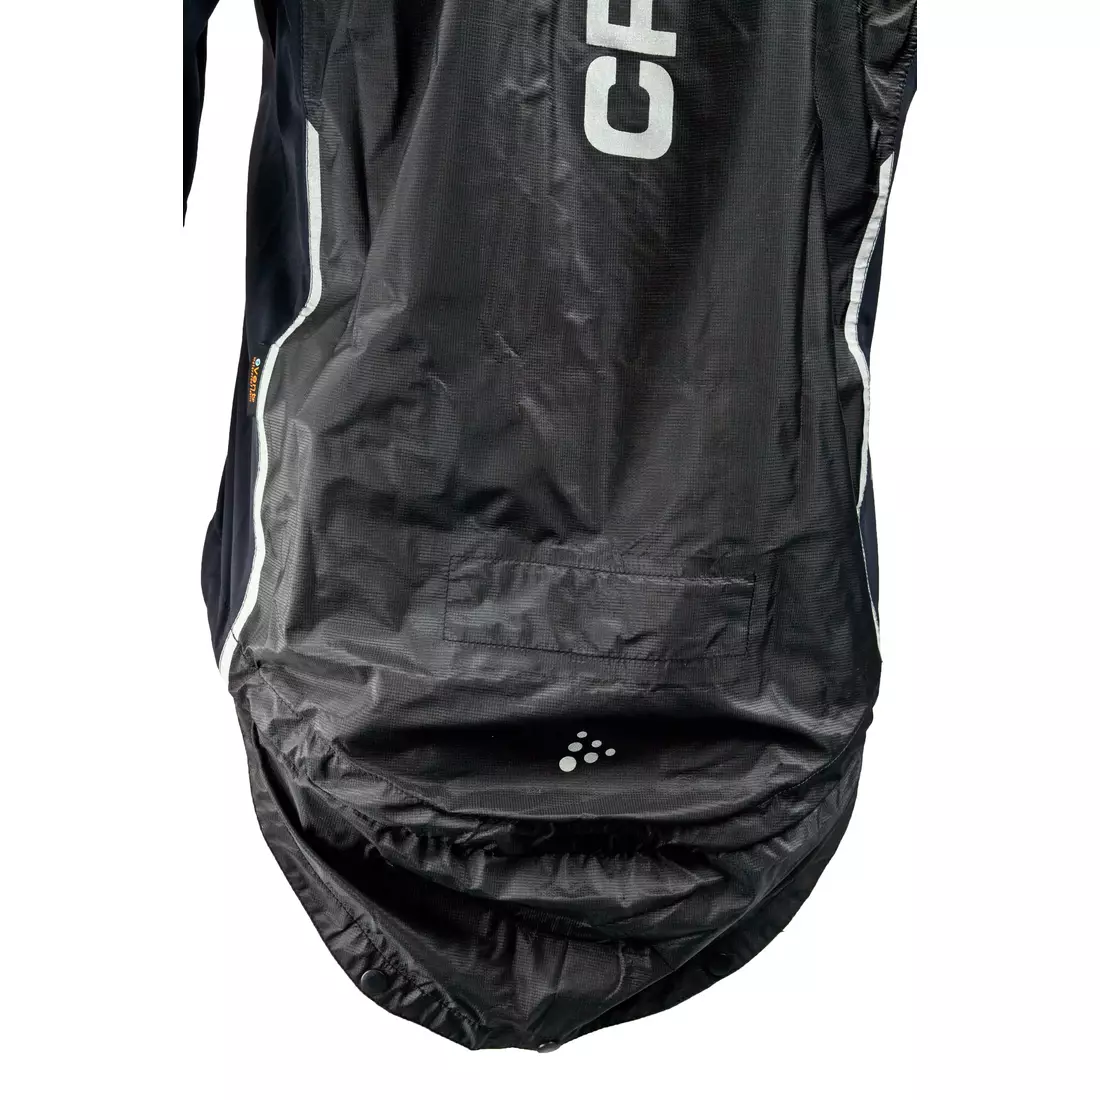 CRAFT ELITE BIKE - nepromokavá pánská cyklistická bunda 1902576-9900, barva: černá